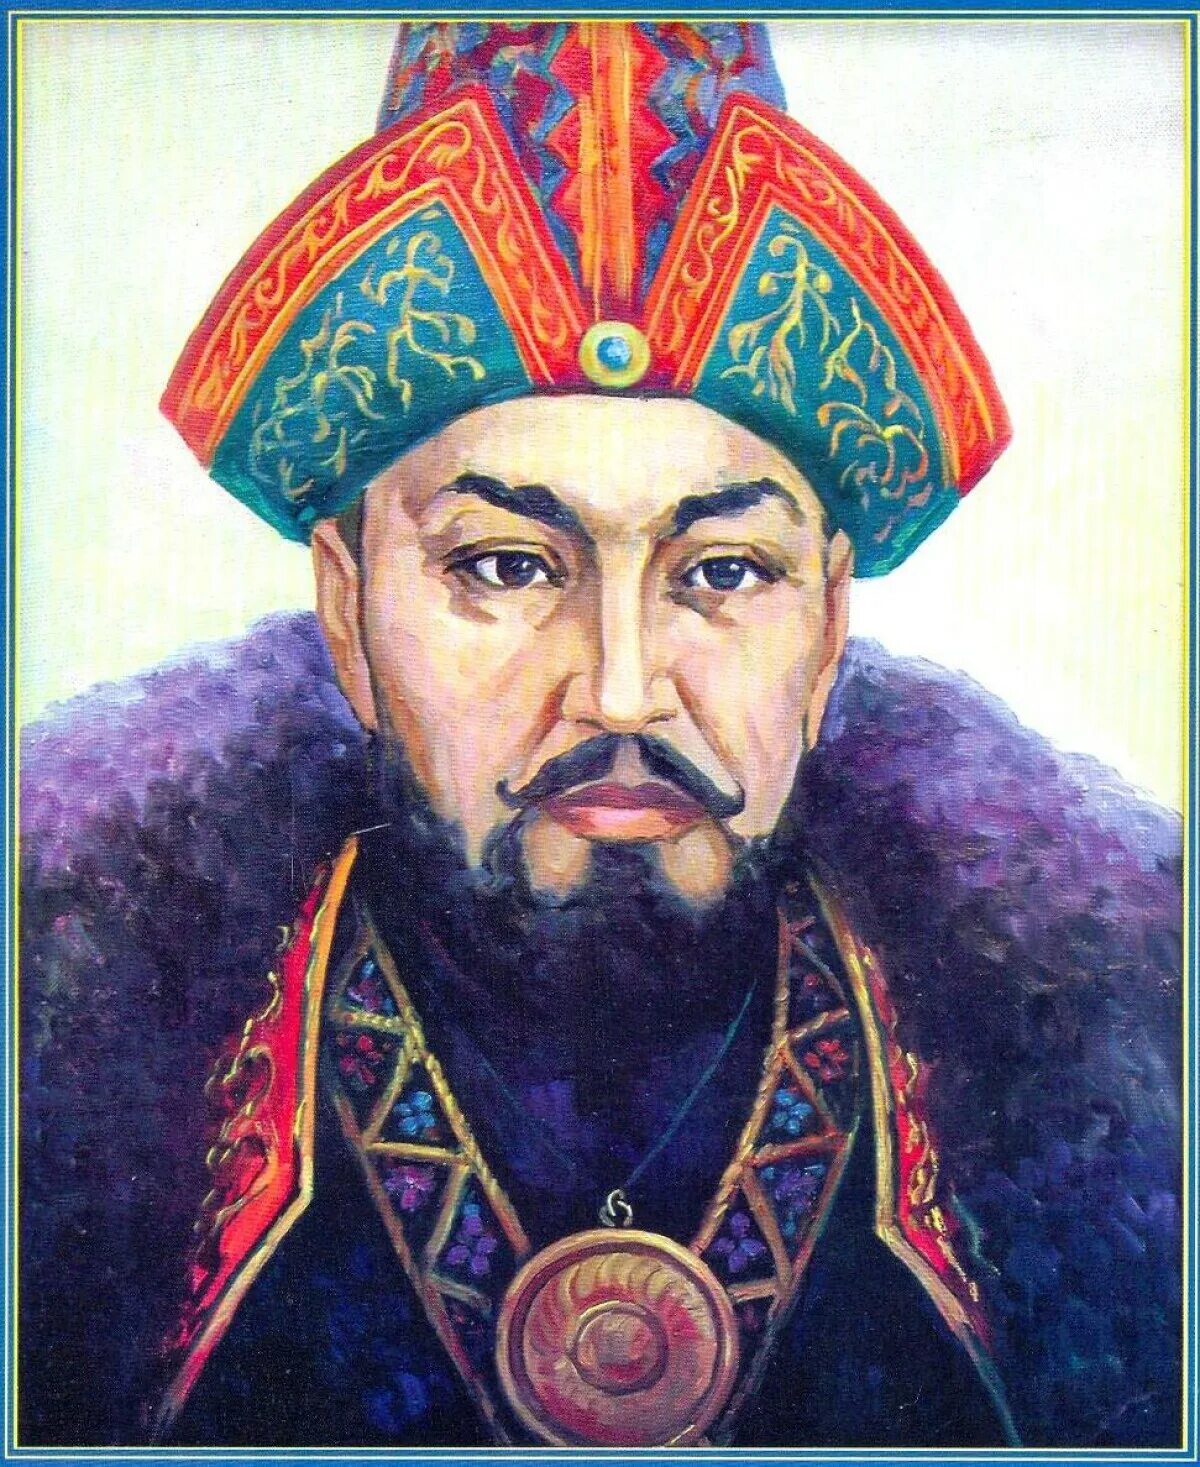 Нұралы хан. Мухаммед Айюб Хан. Портрет Абулхаир хана. Касым-Хан казахский правитель.